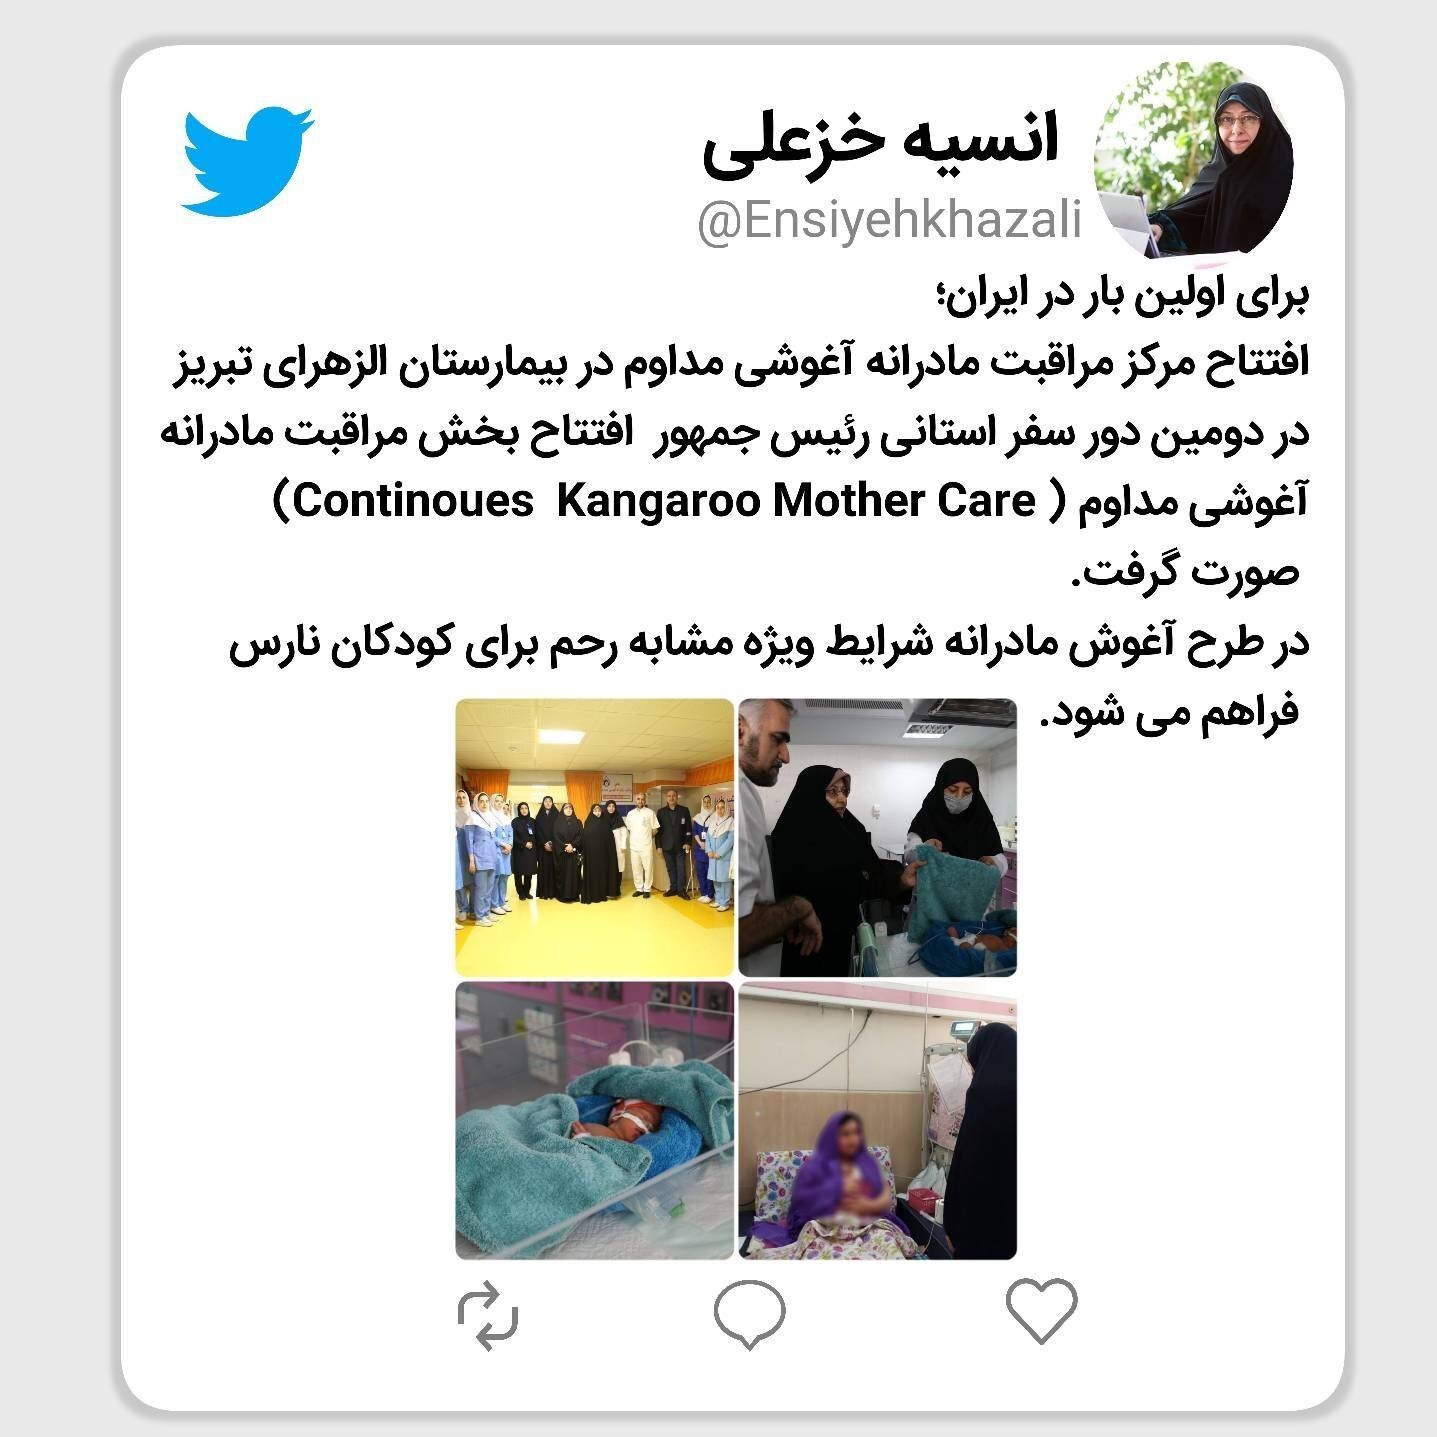 توئیت معاون رئیس جمهور درباره افتتاح مرکز مراقبت مادرانه